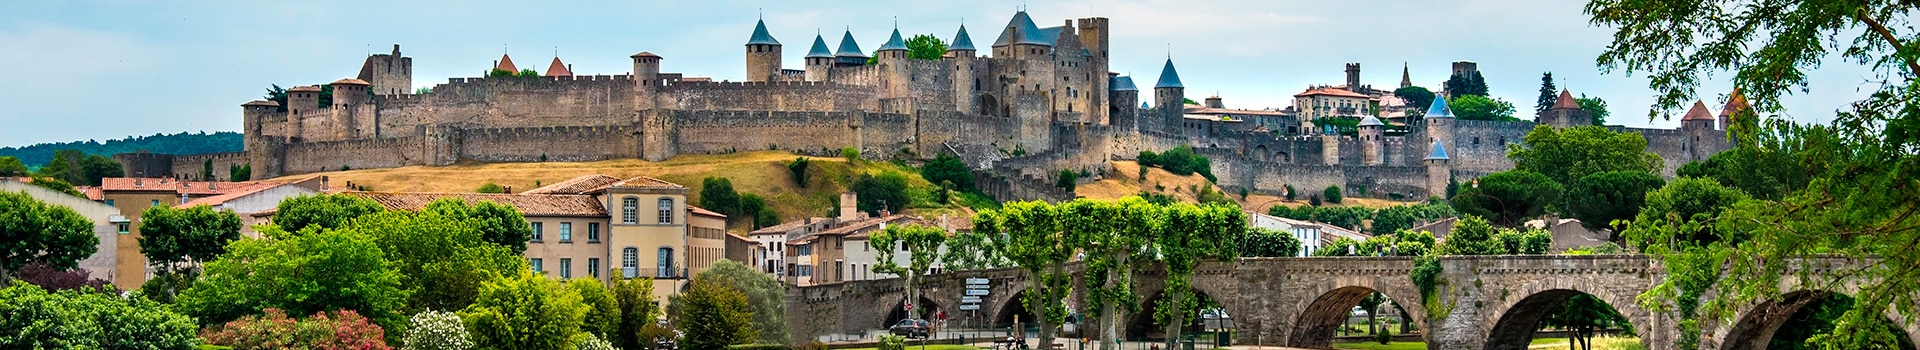 Londres - Carcassonne